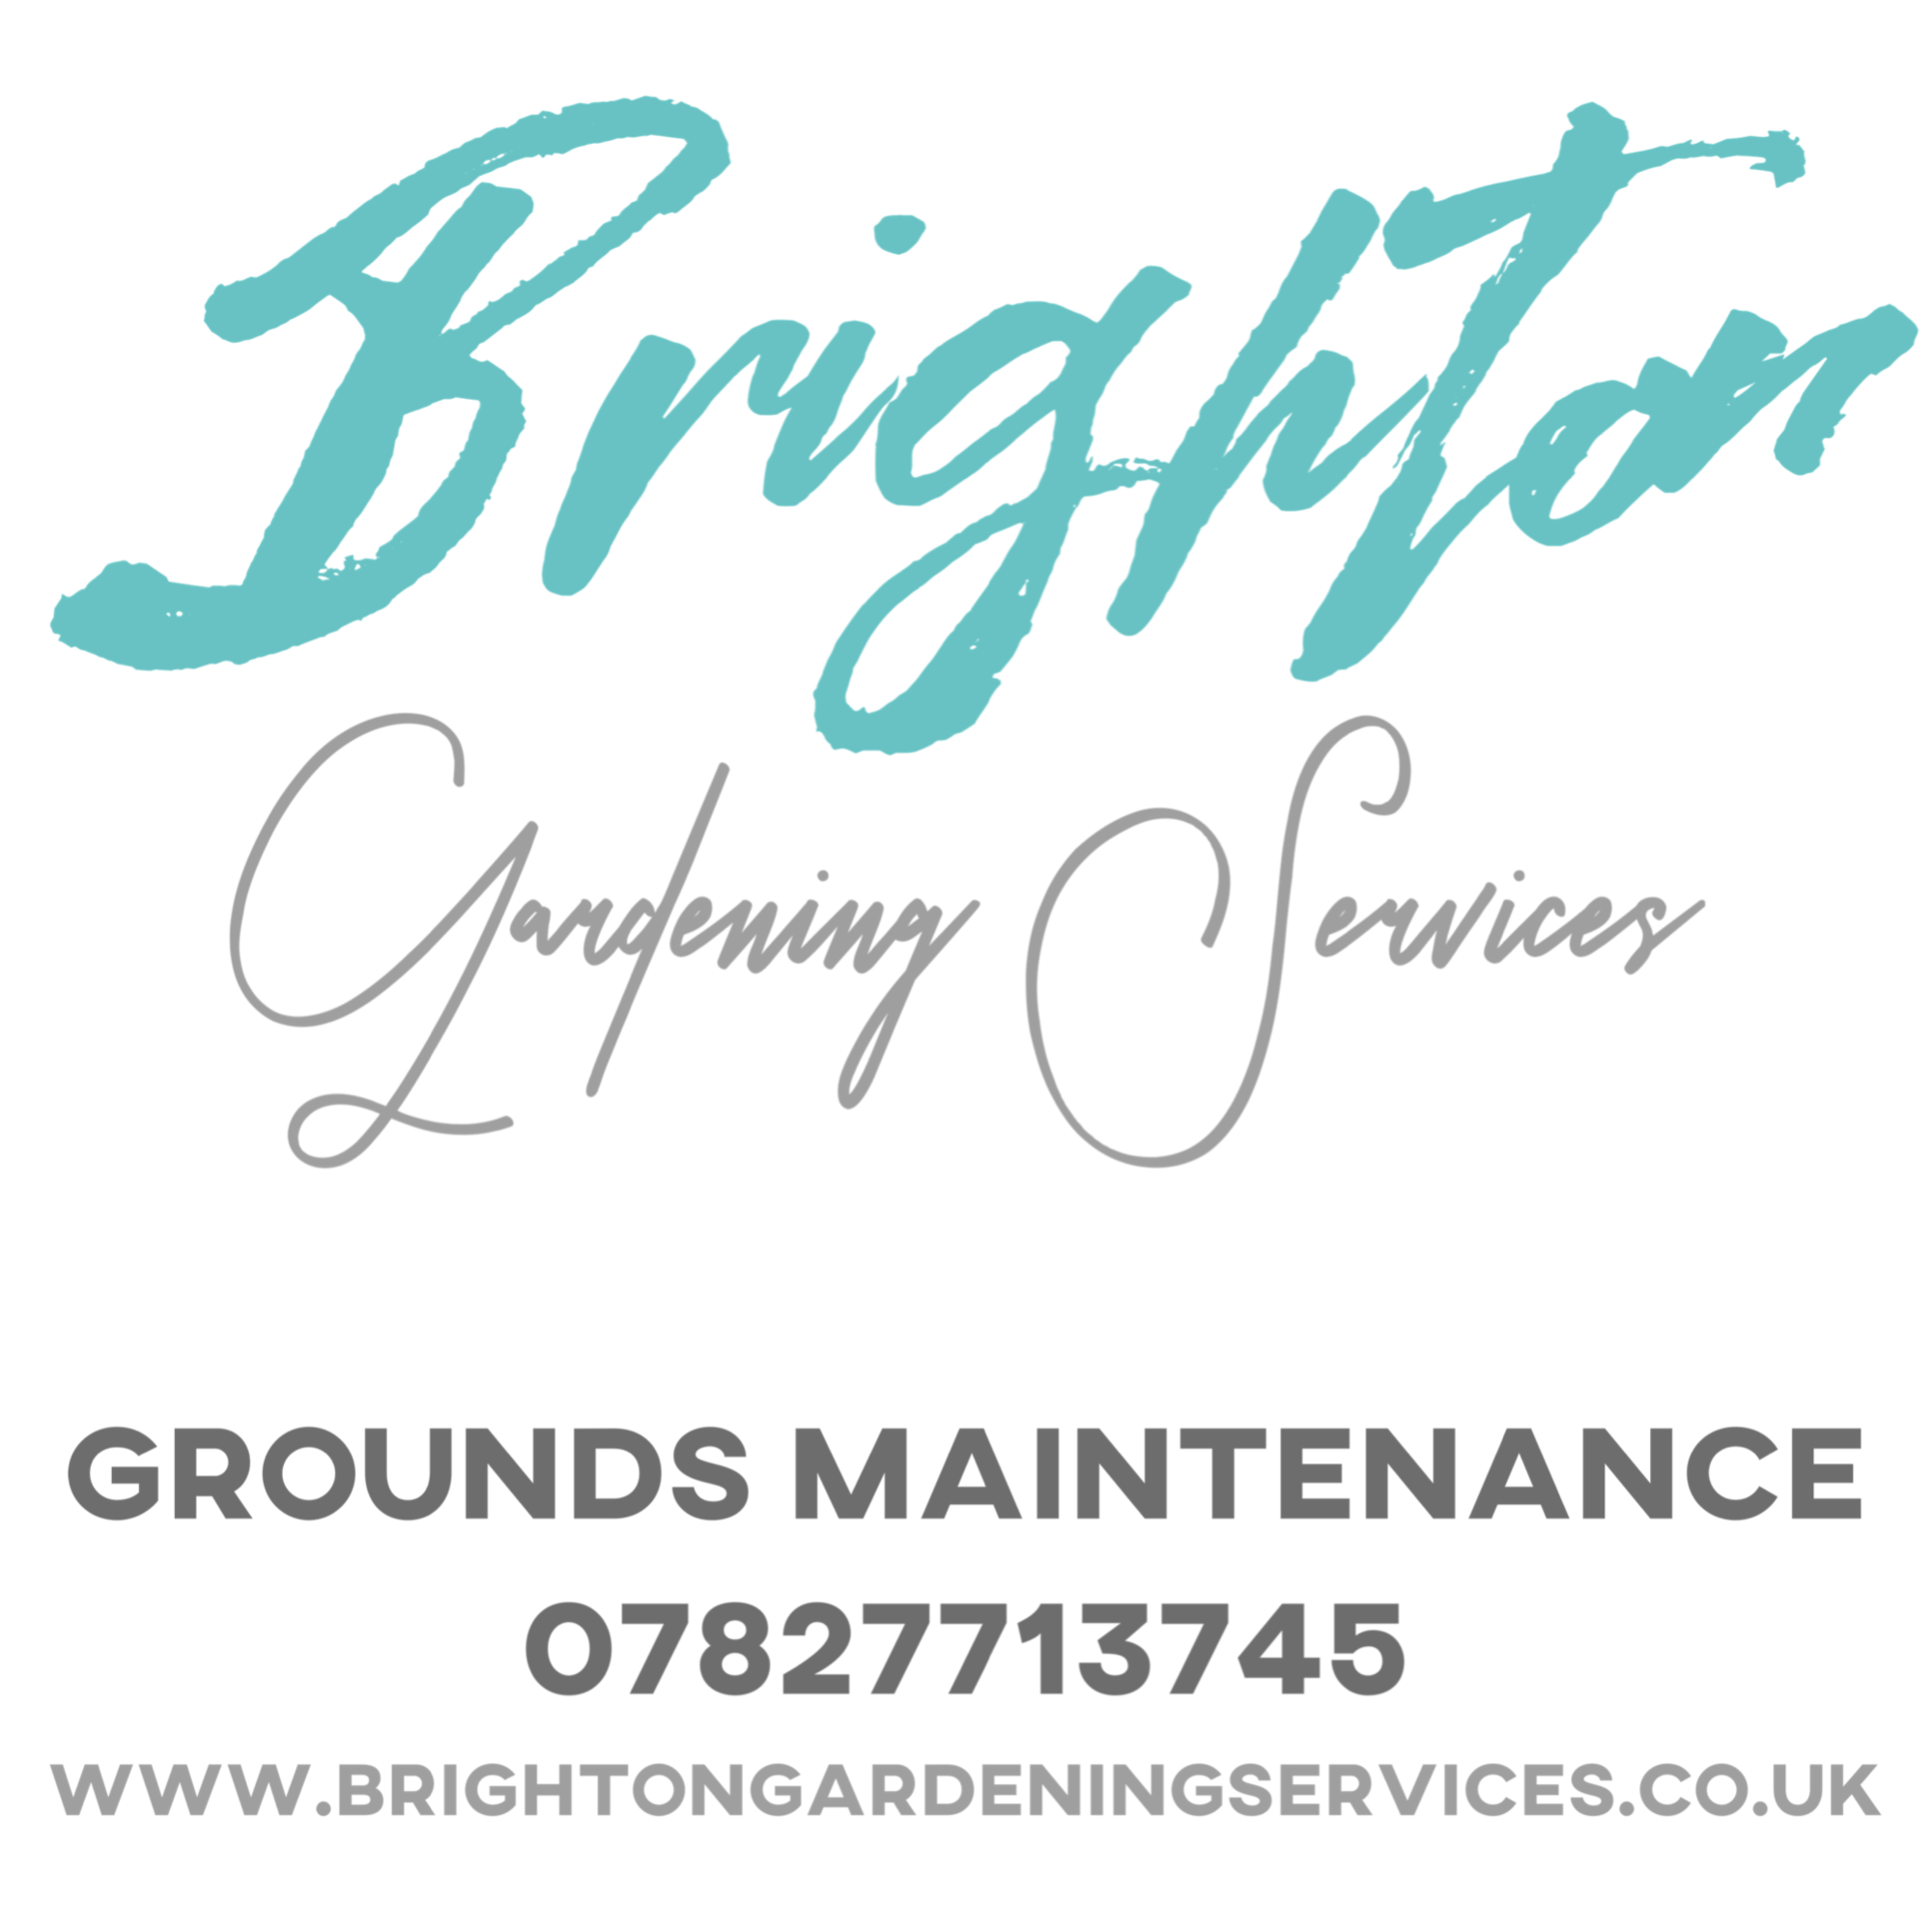 Brighton Gardening Services